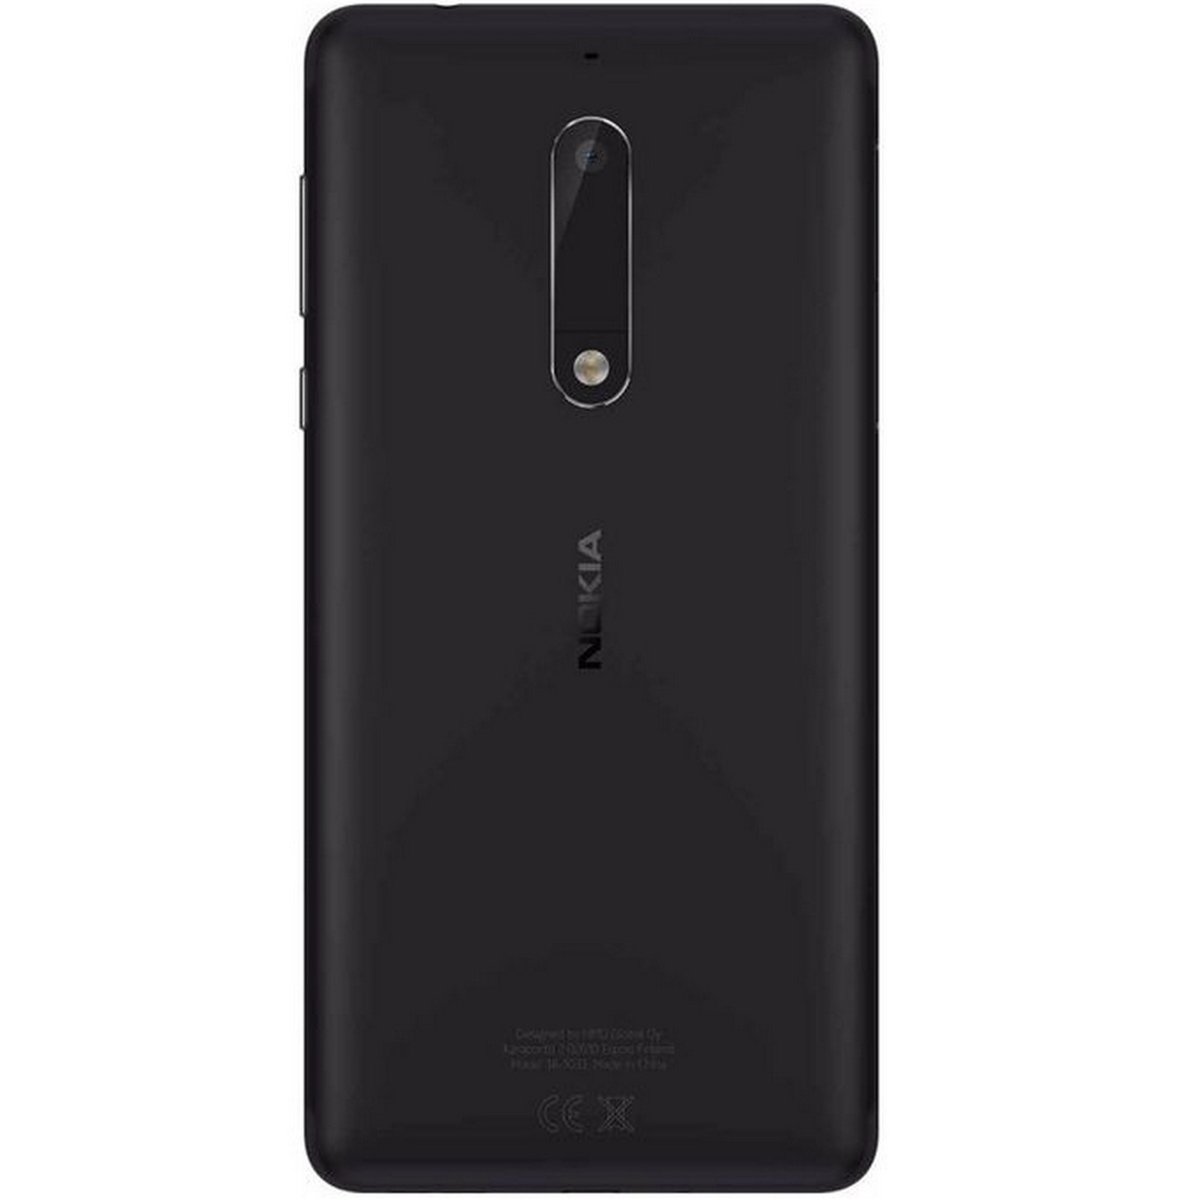 Nokia 5 16GB Black